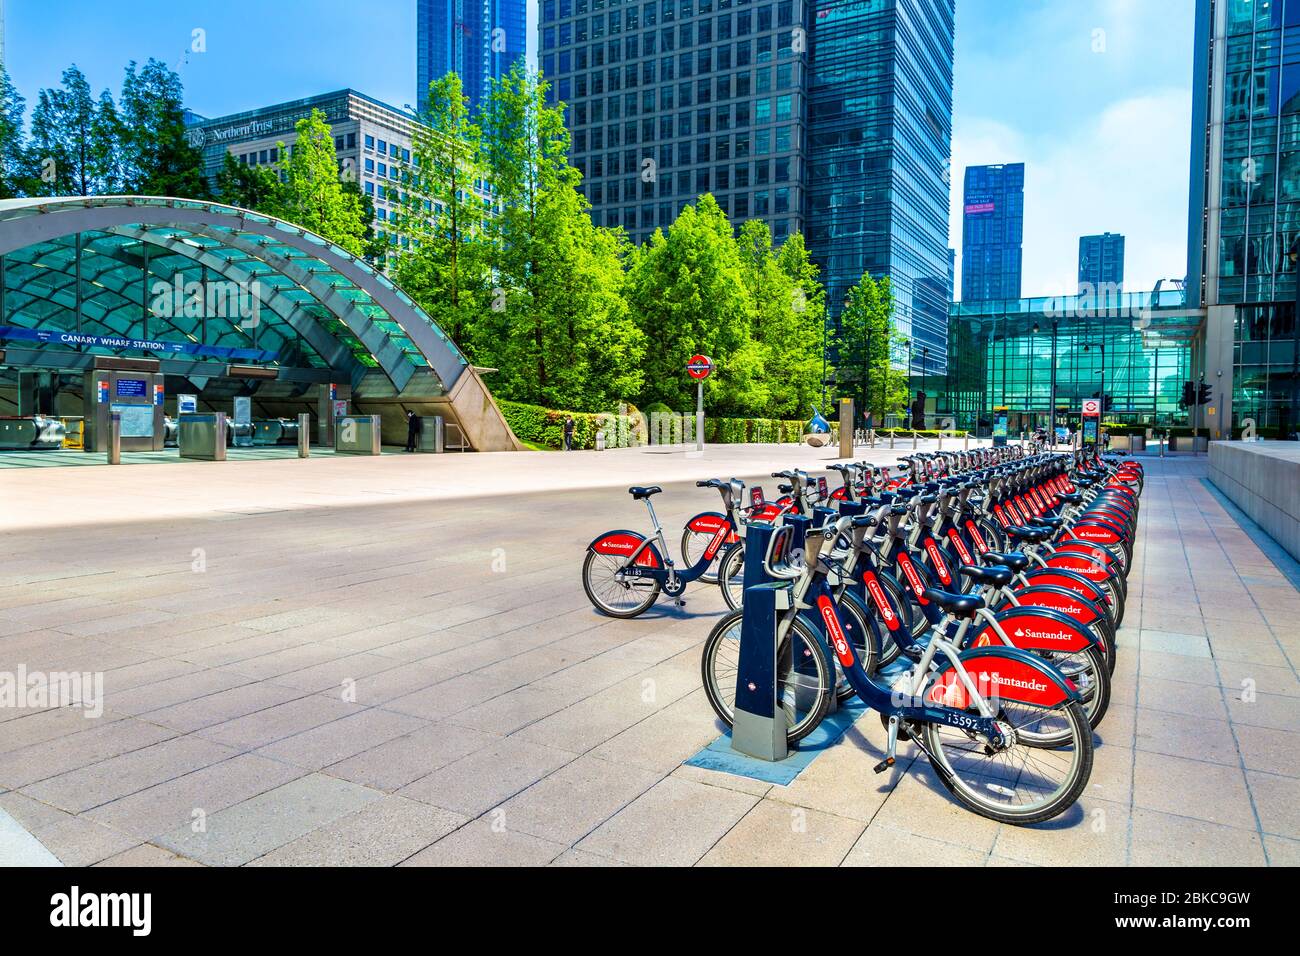 Amarré Santander location de vélos sur Reuters Plaza en face de la station de métro Canary Wharf, Londres, Royaume-Uni Banque D'Images